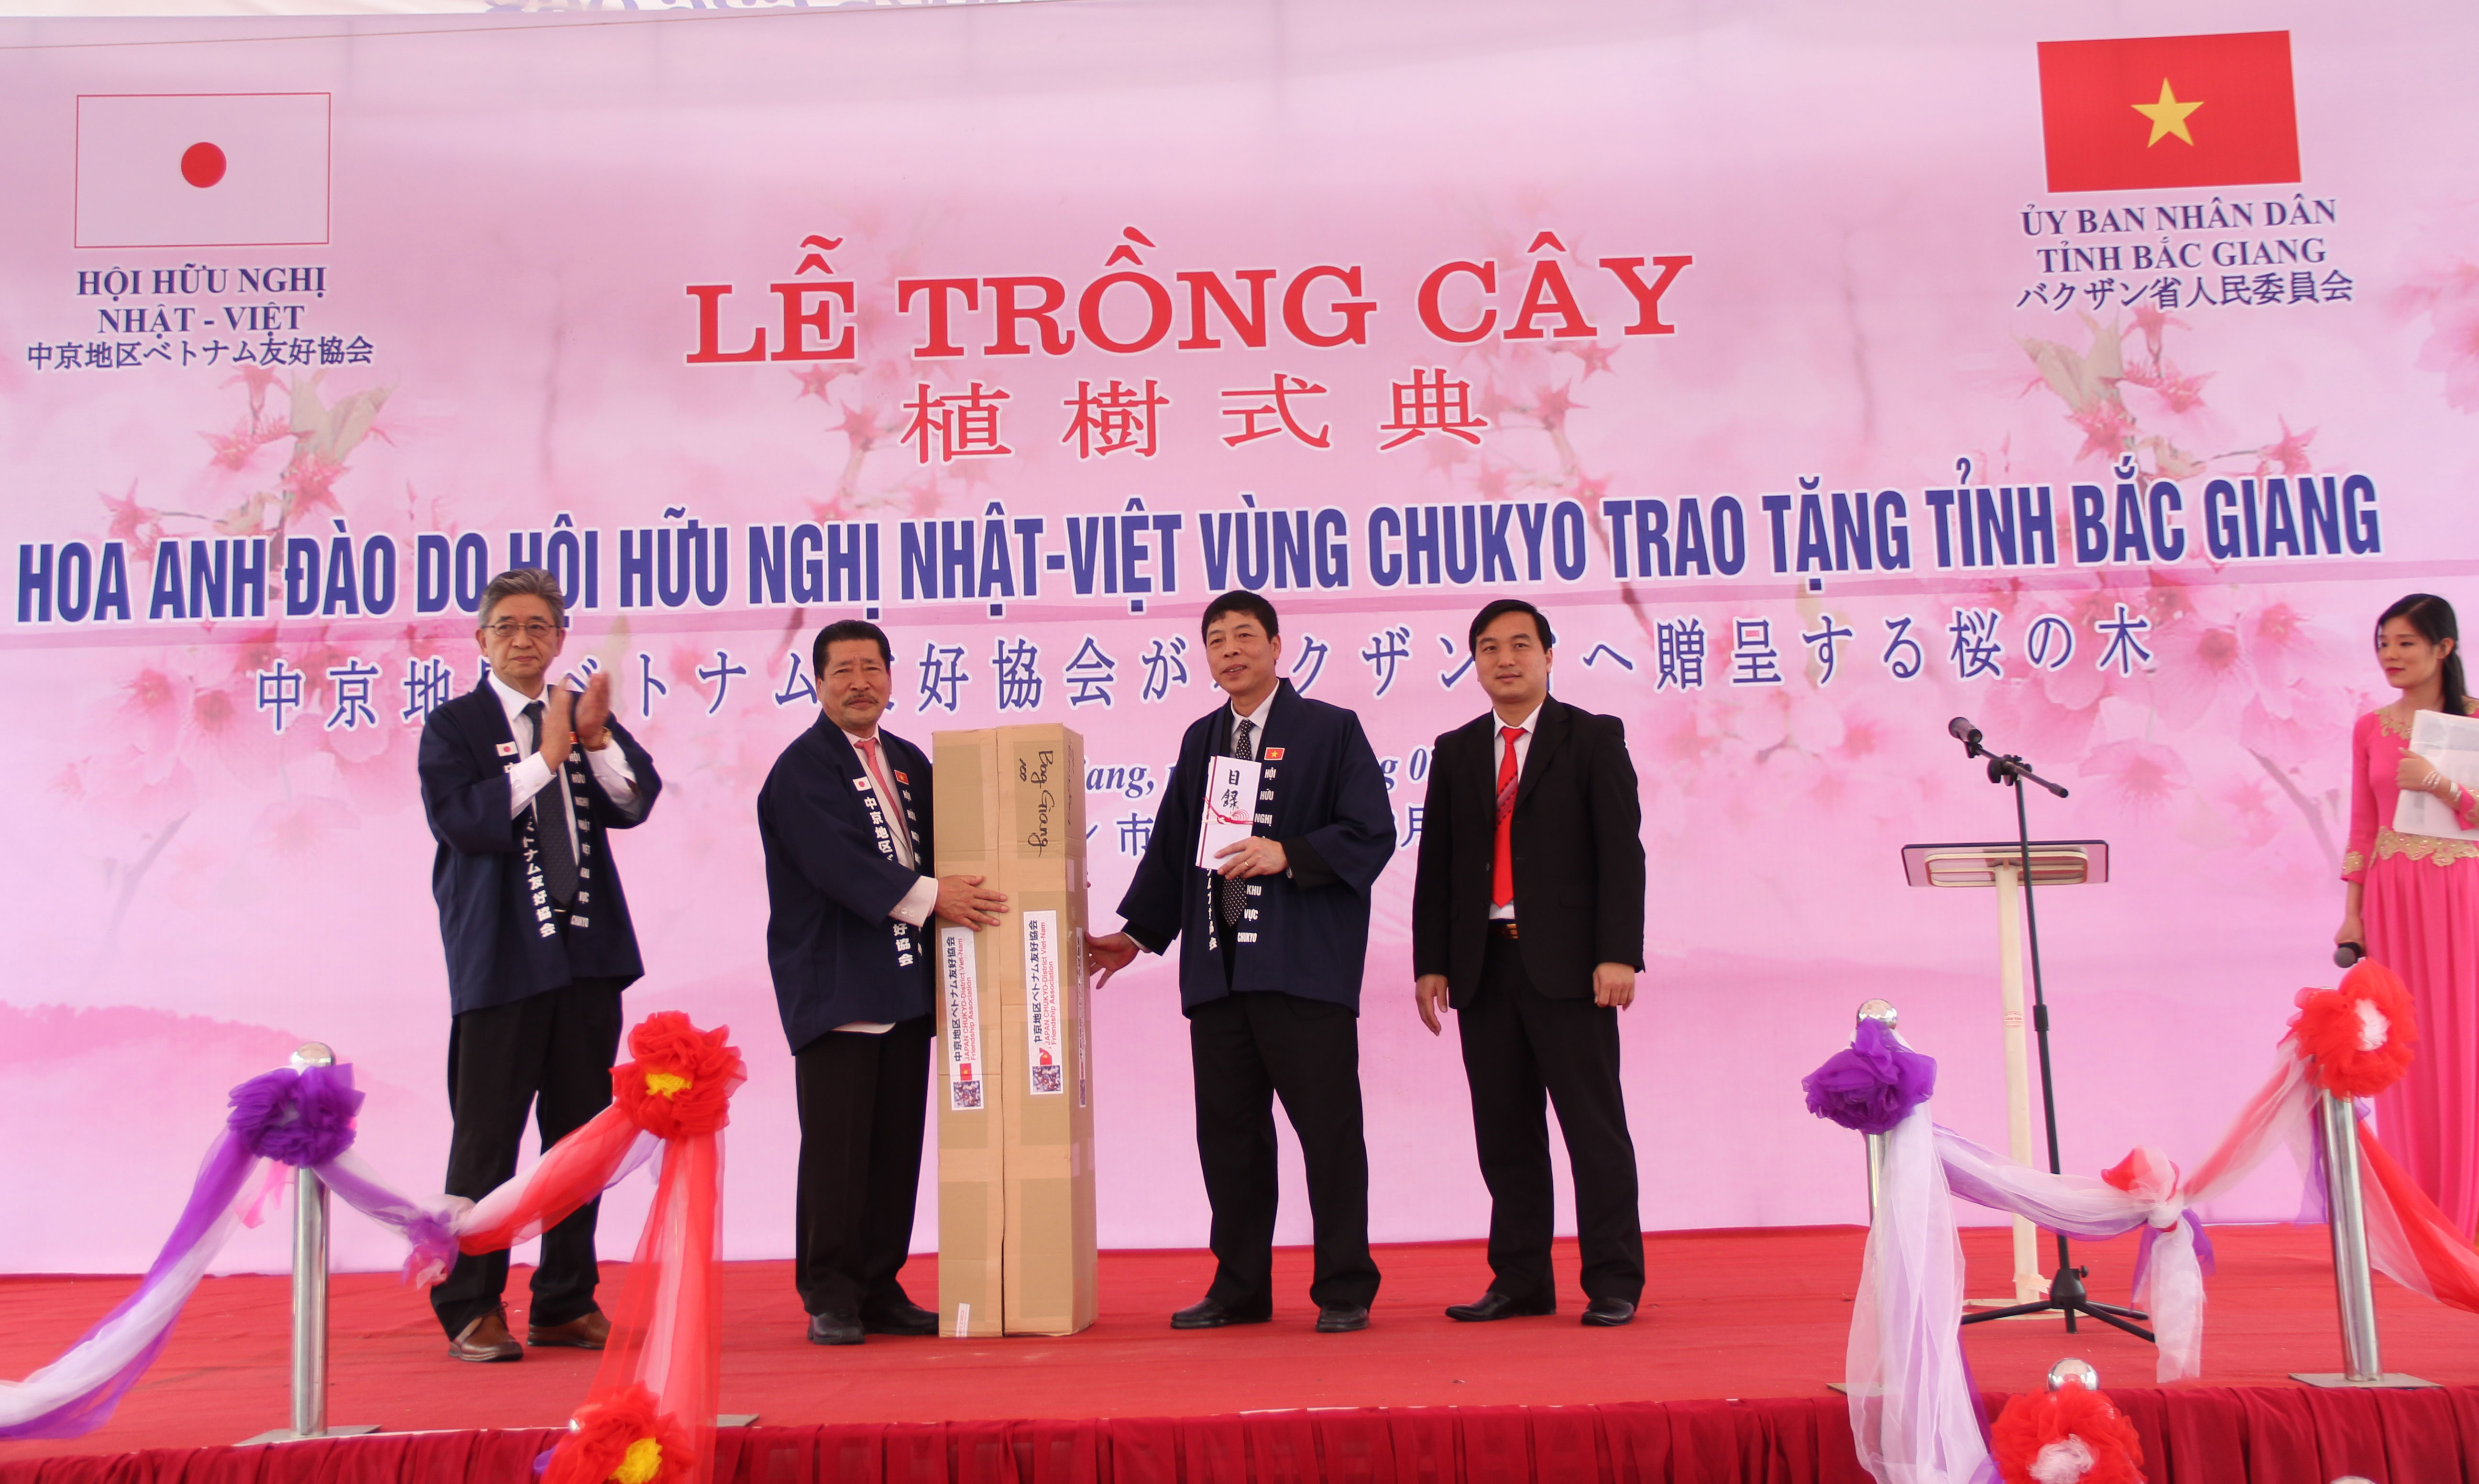 Lễ trồng cây hoa Anh đào do hội Hữu nghị Nhật Việt vùng Chukyo trao tặng tỉnh Bắc Giang